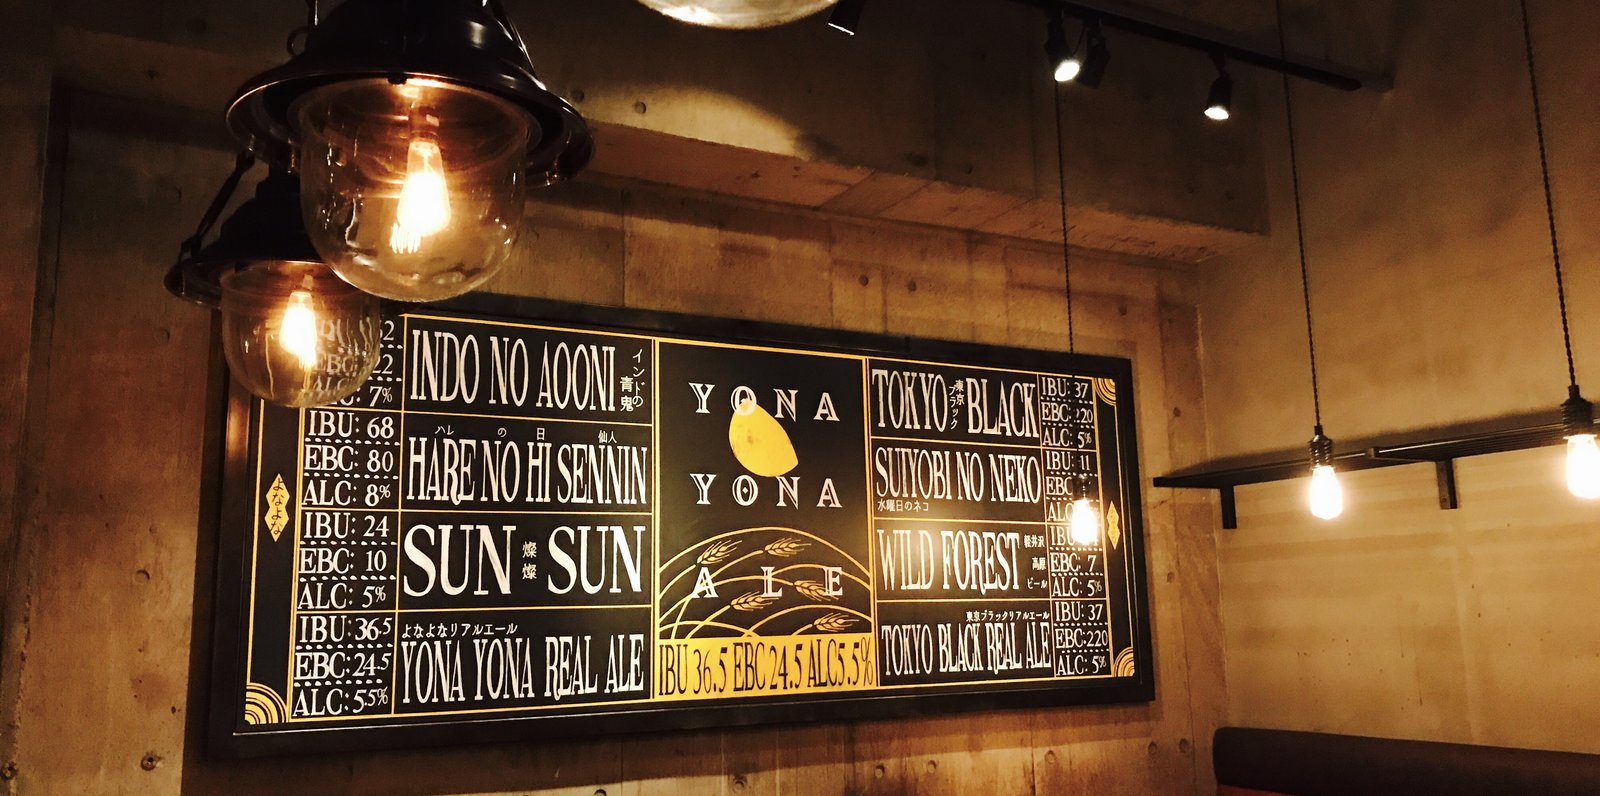 YONA YONA BEER WORKS 青山店